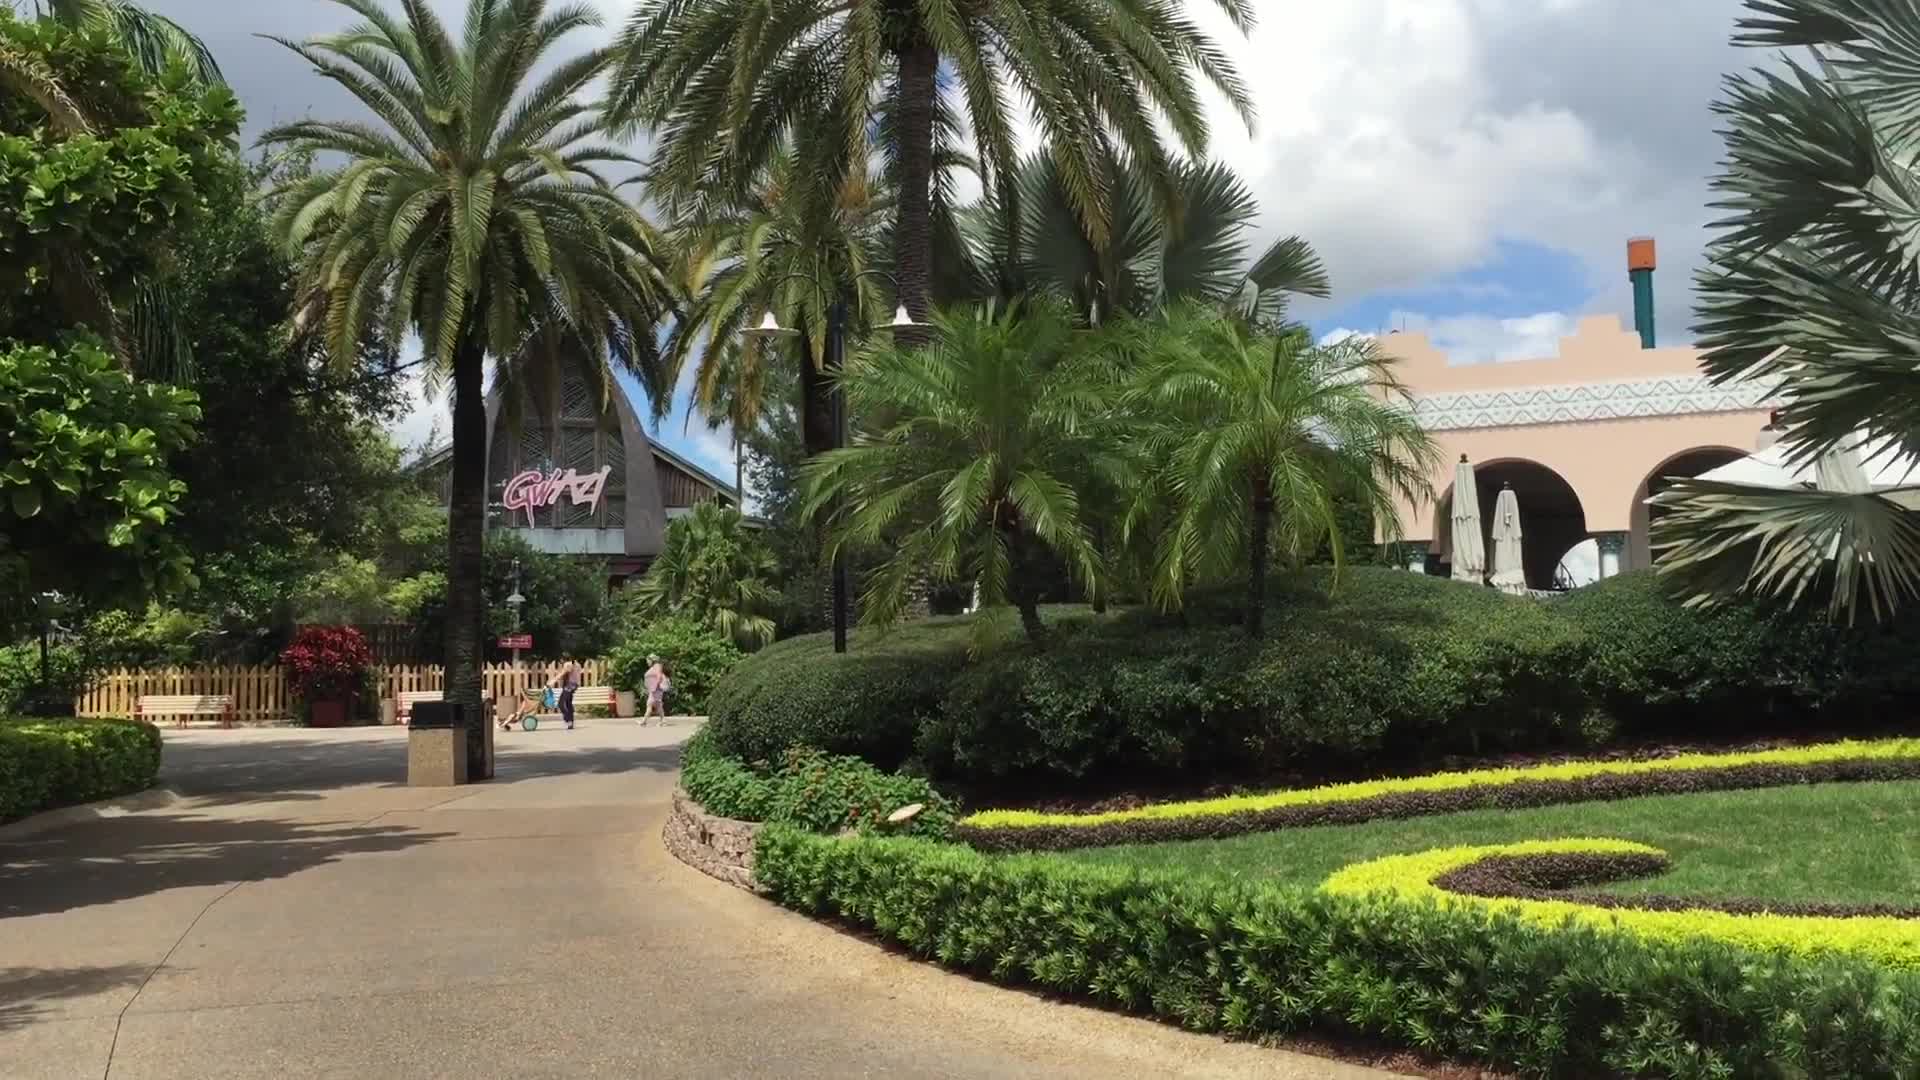 iPhone 6 Plus Video Test 2 - Busch Gardens Tampa